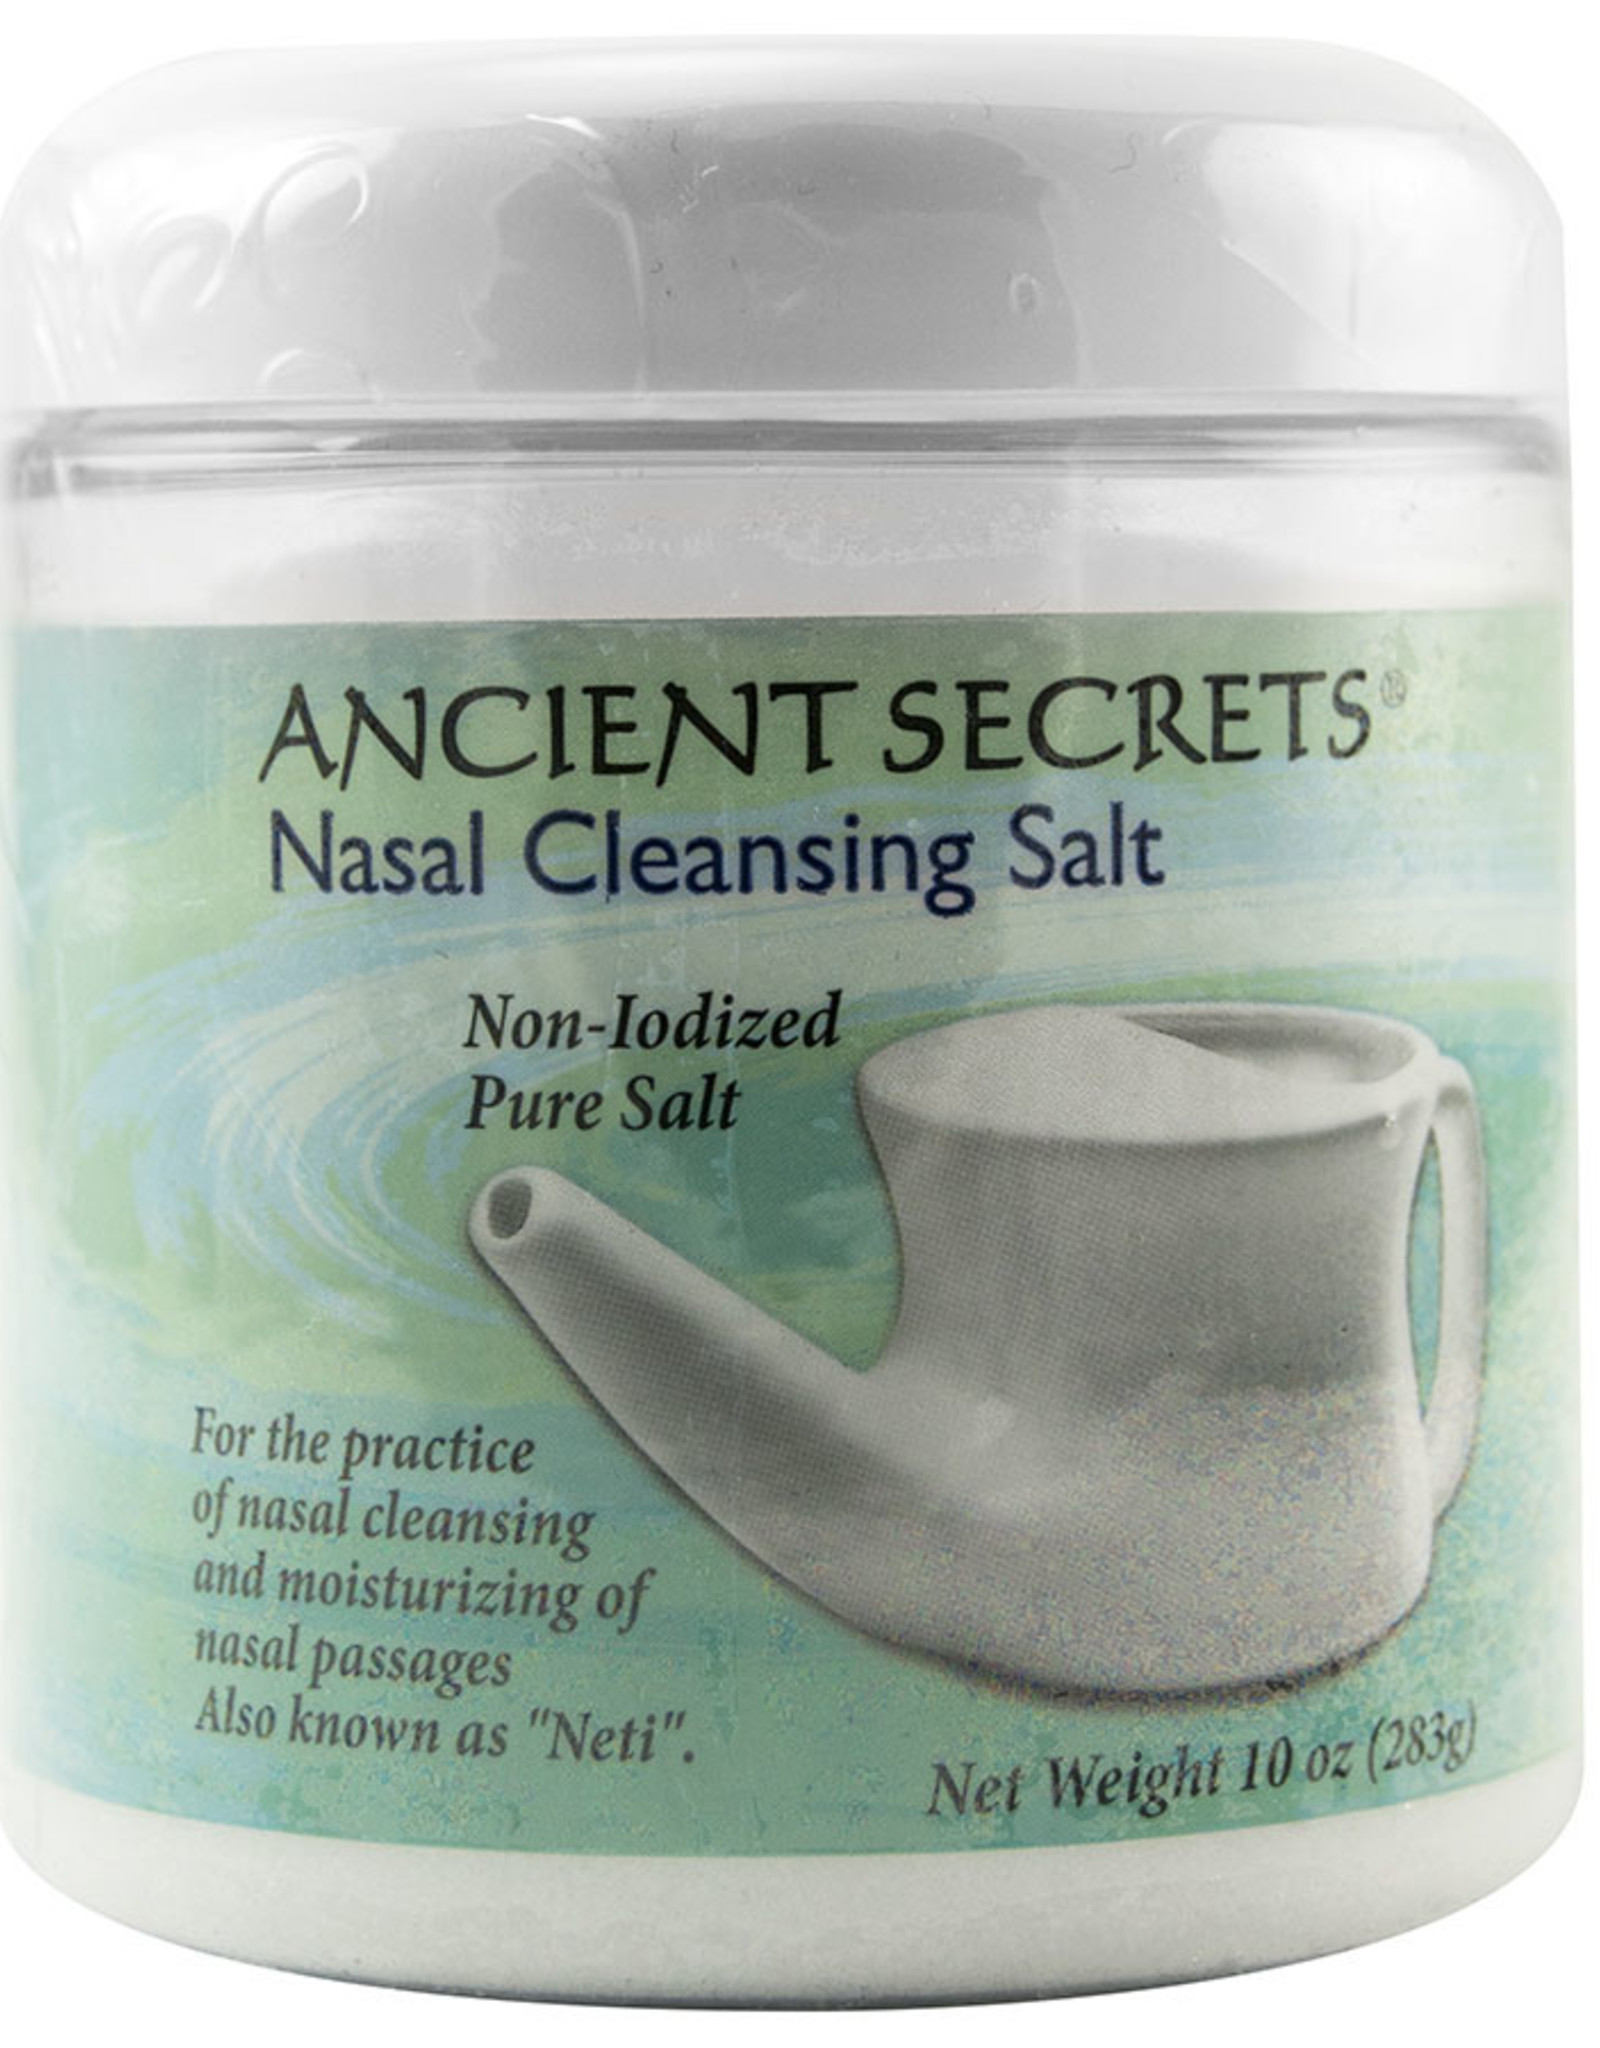 Ancient Secrets Nasal Cleansing Salt - 10oz